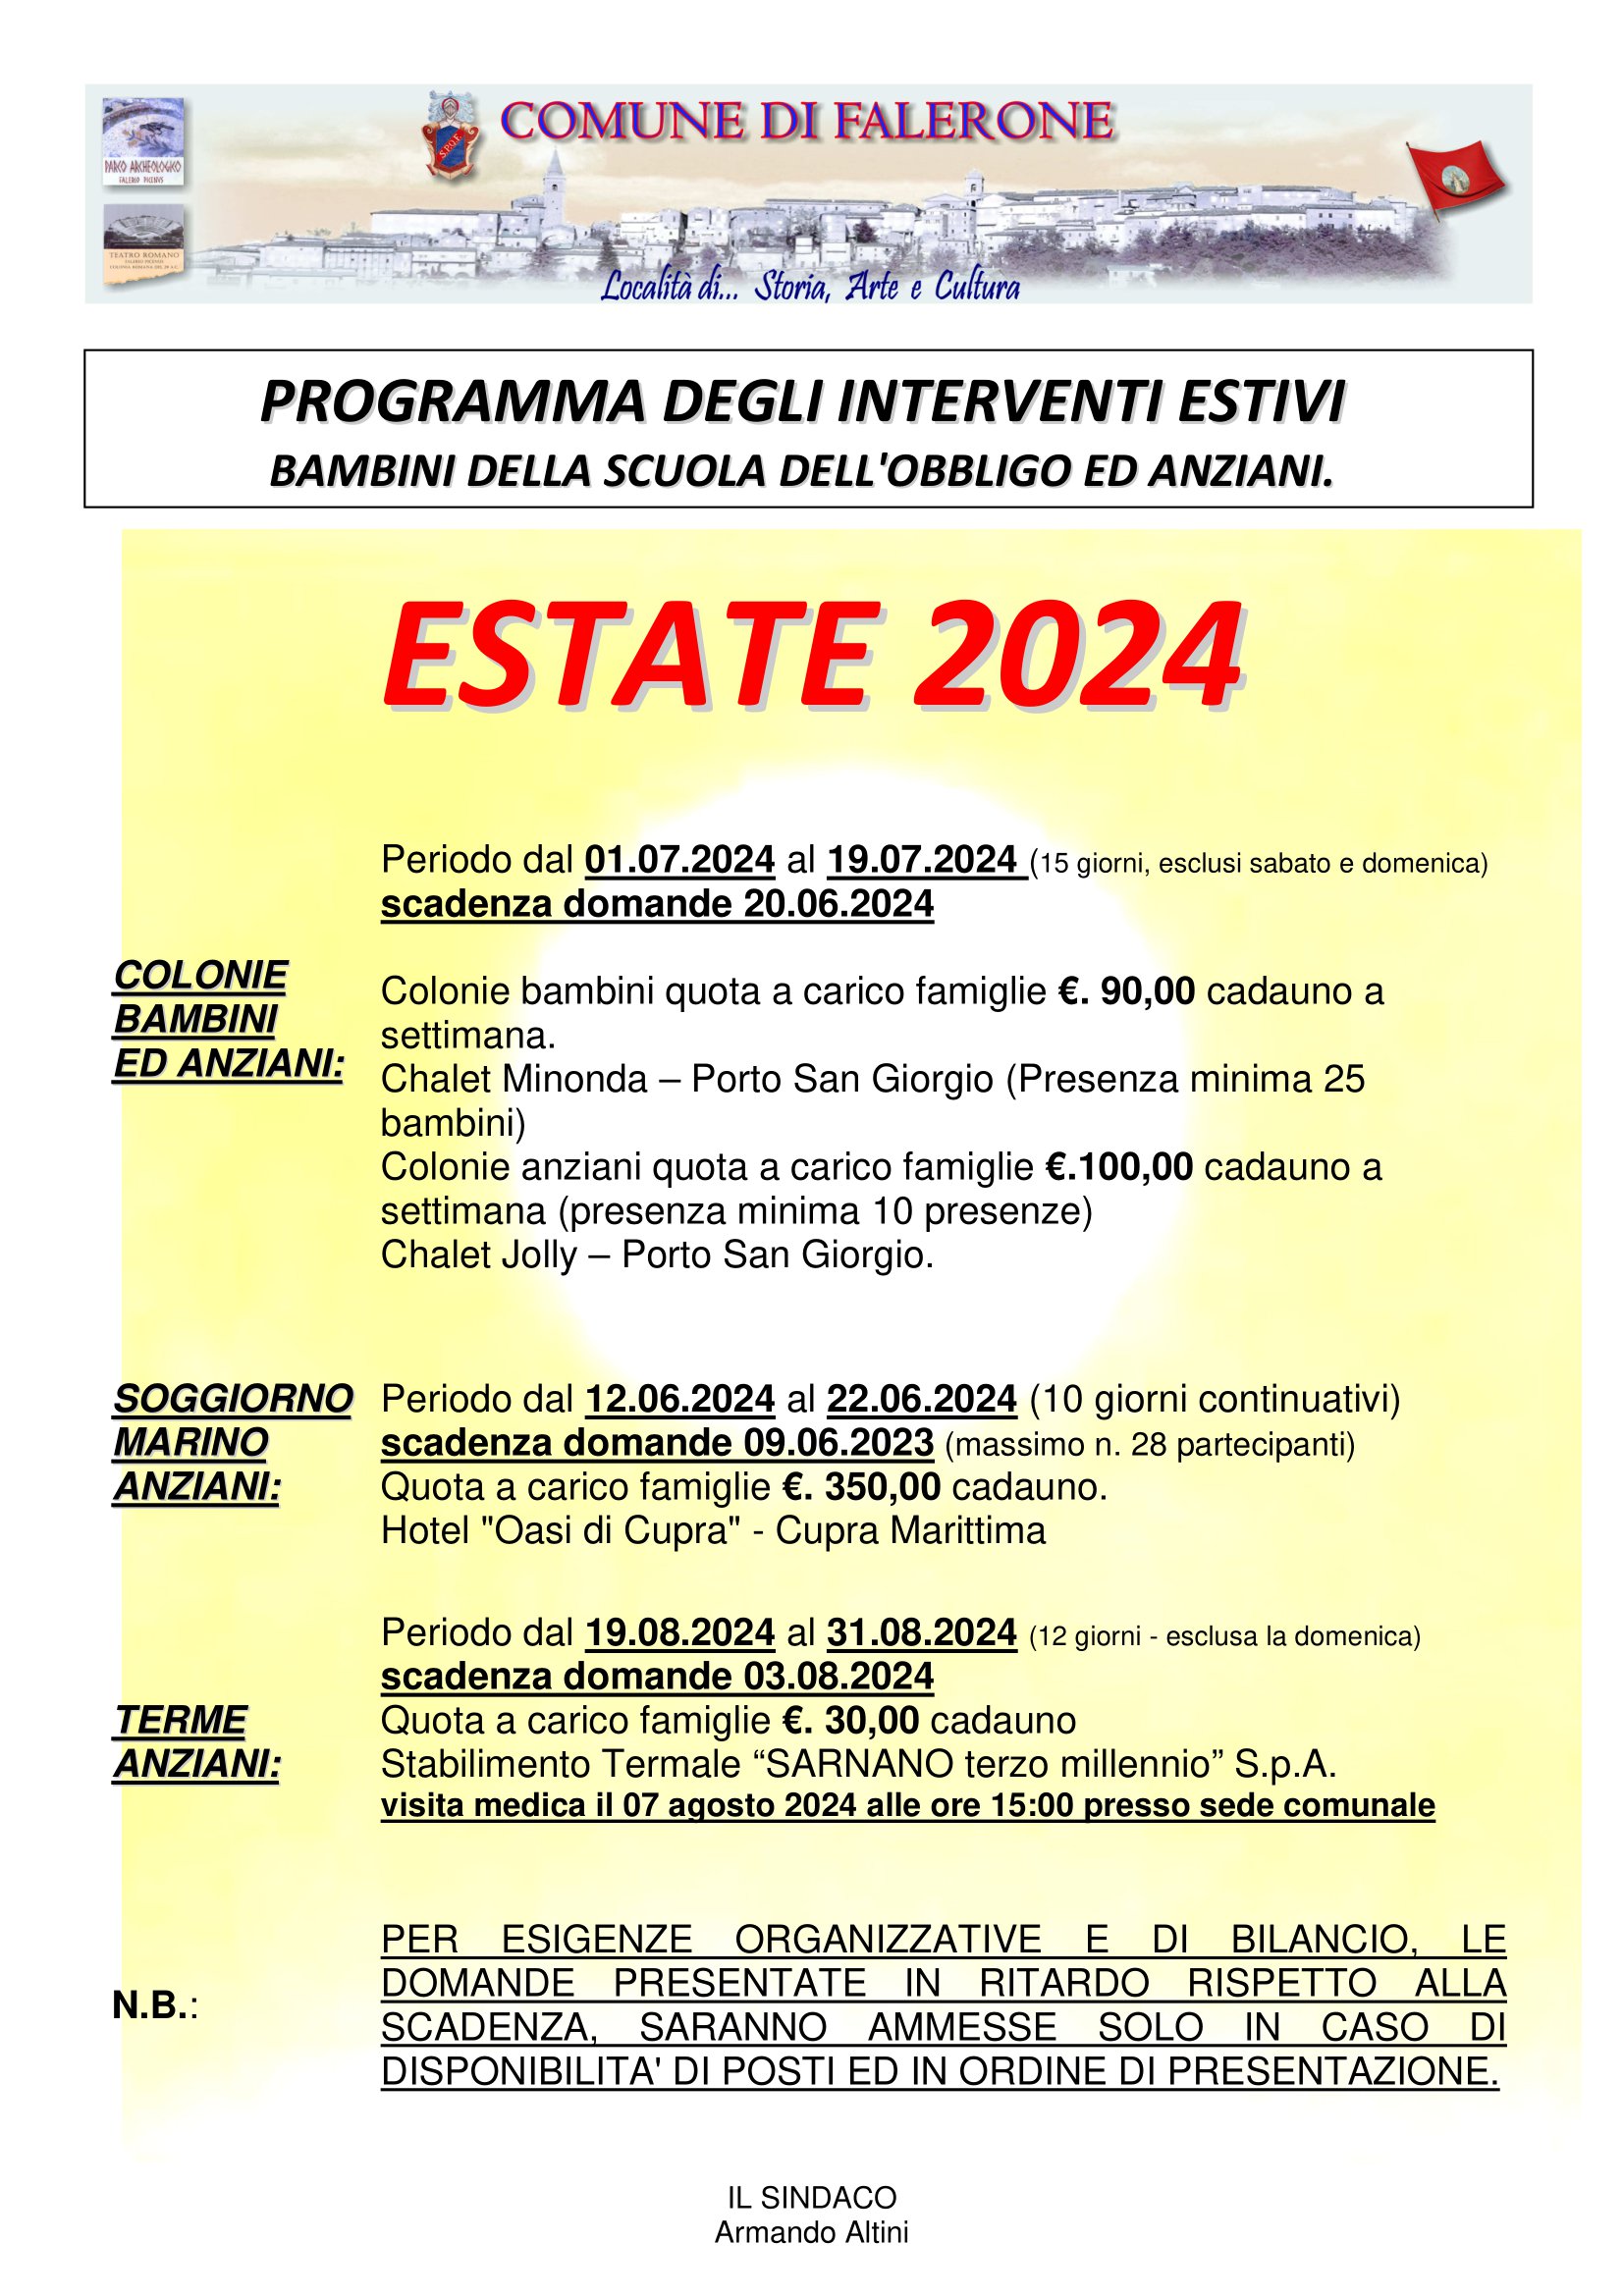 Programma degli interventi estivi  - Estate 2024